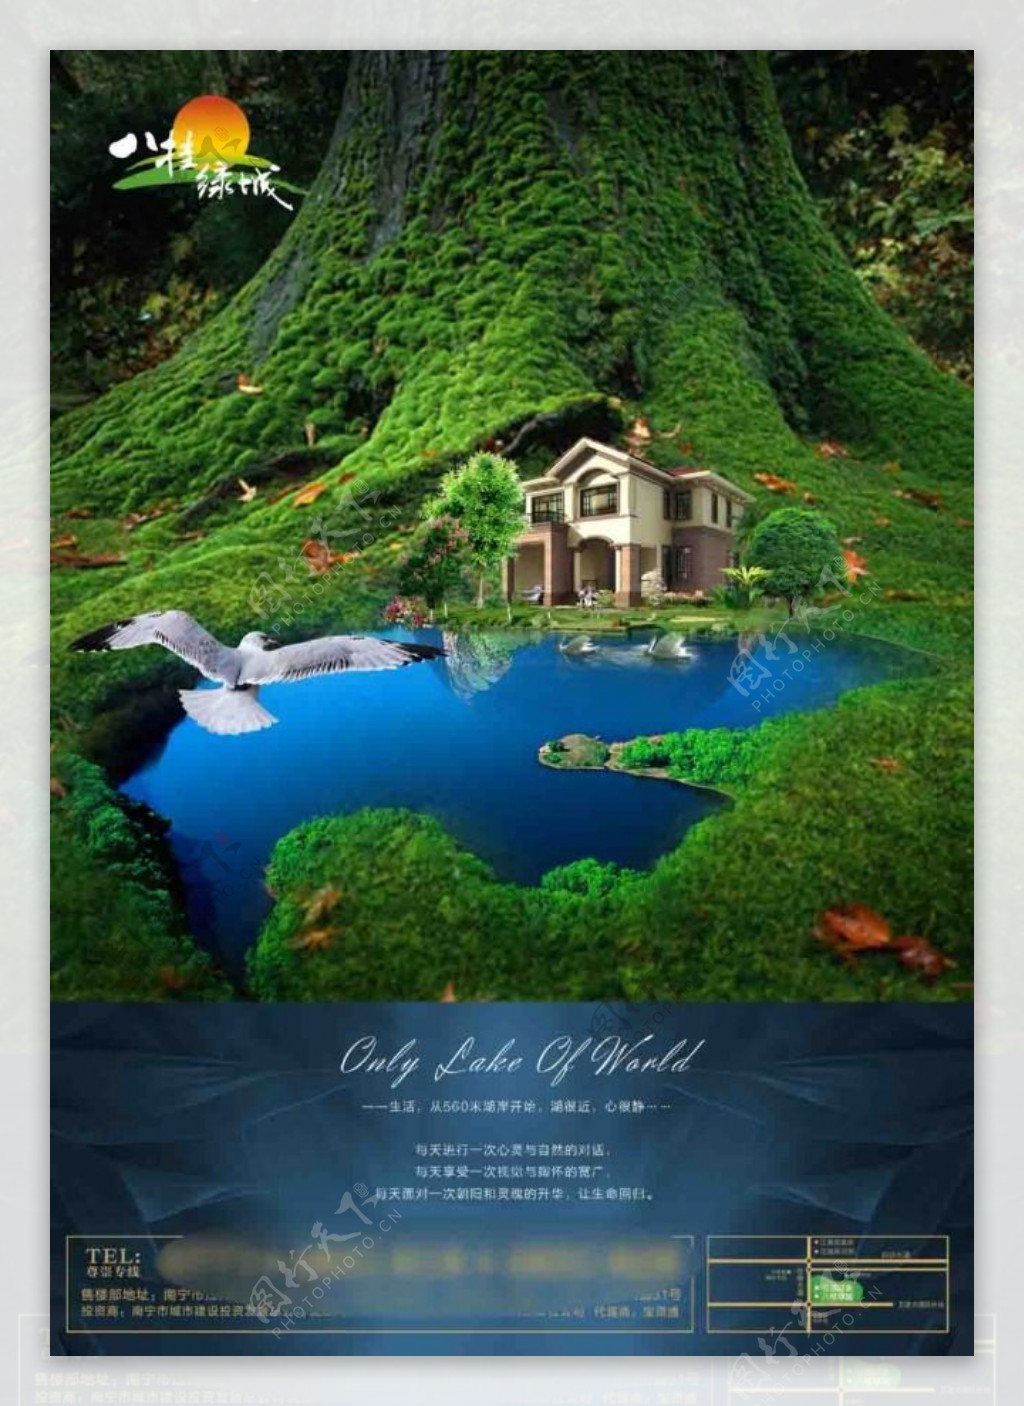 八桂绿城别墅广告图片素材